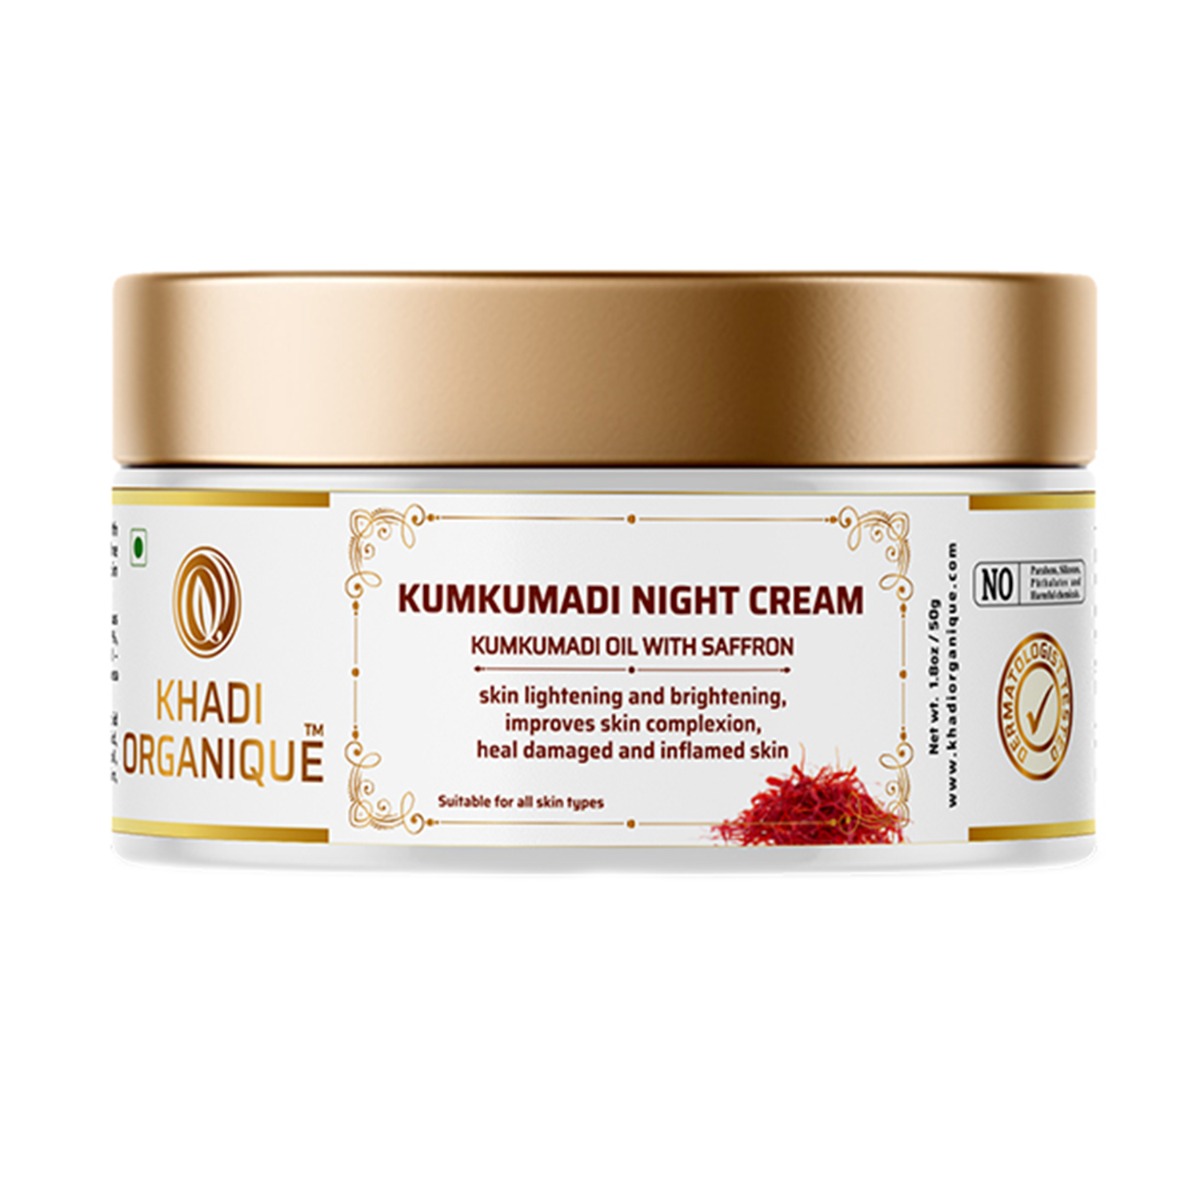 Khadi Organique Kumkumadi Oil With Saffron Night Cream, 50gm